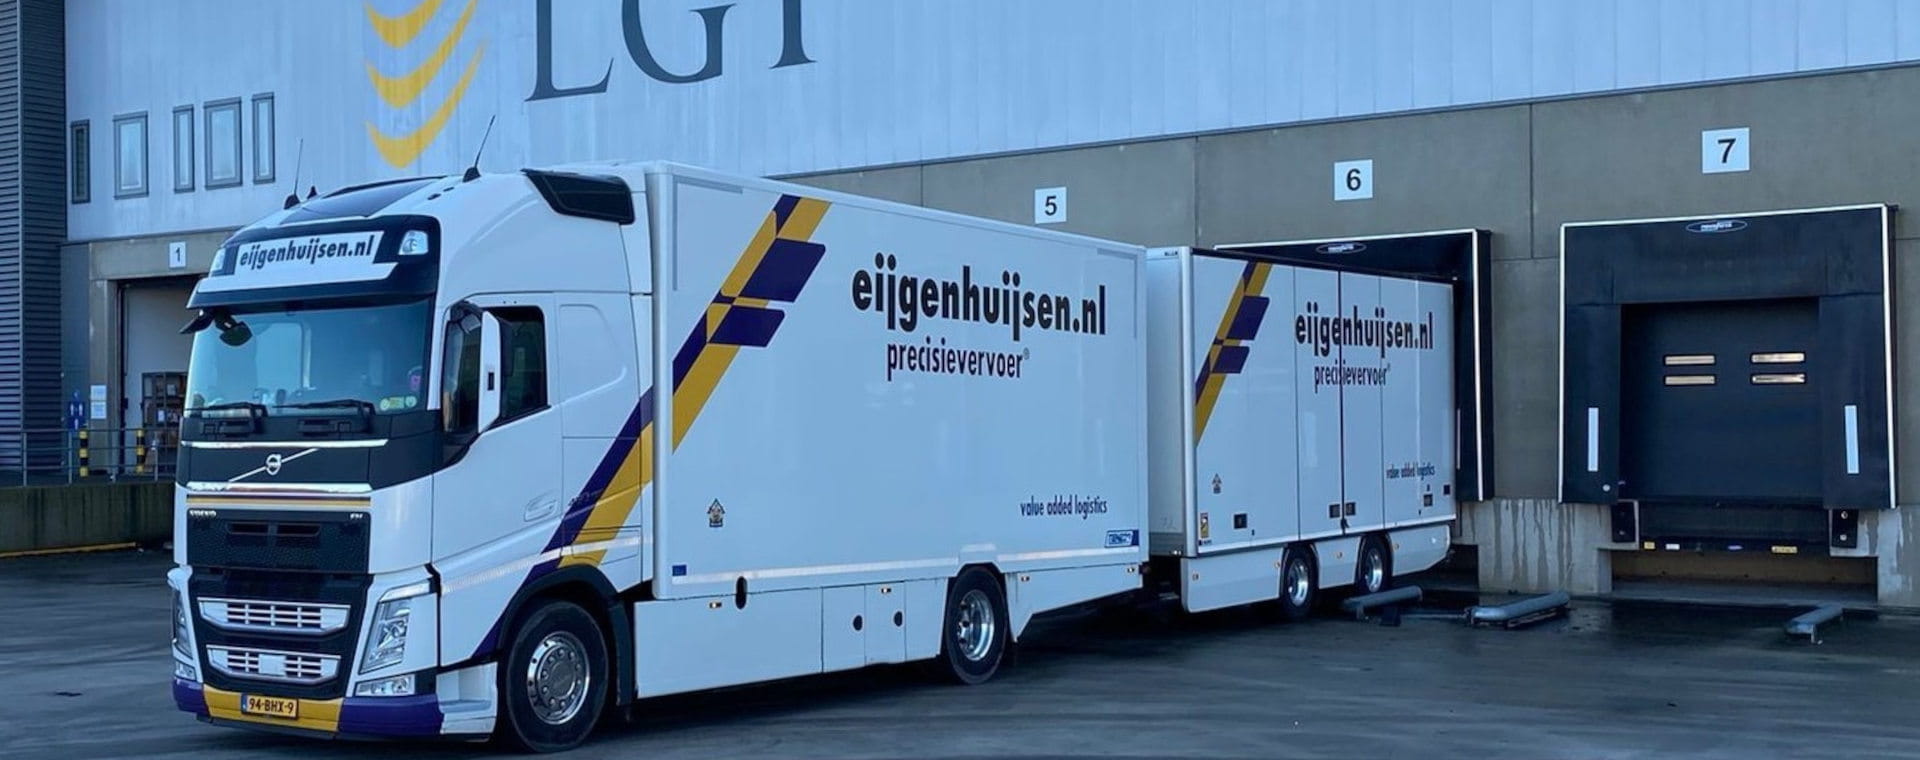 Elanders kauft niederländisches Unternehmen | LGI